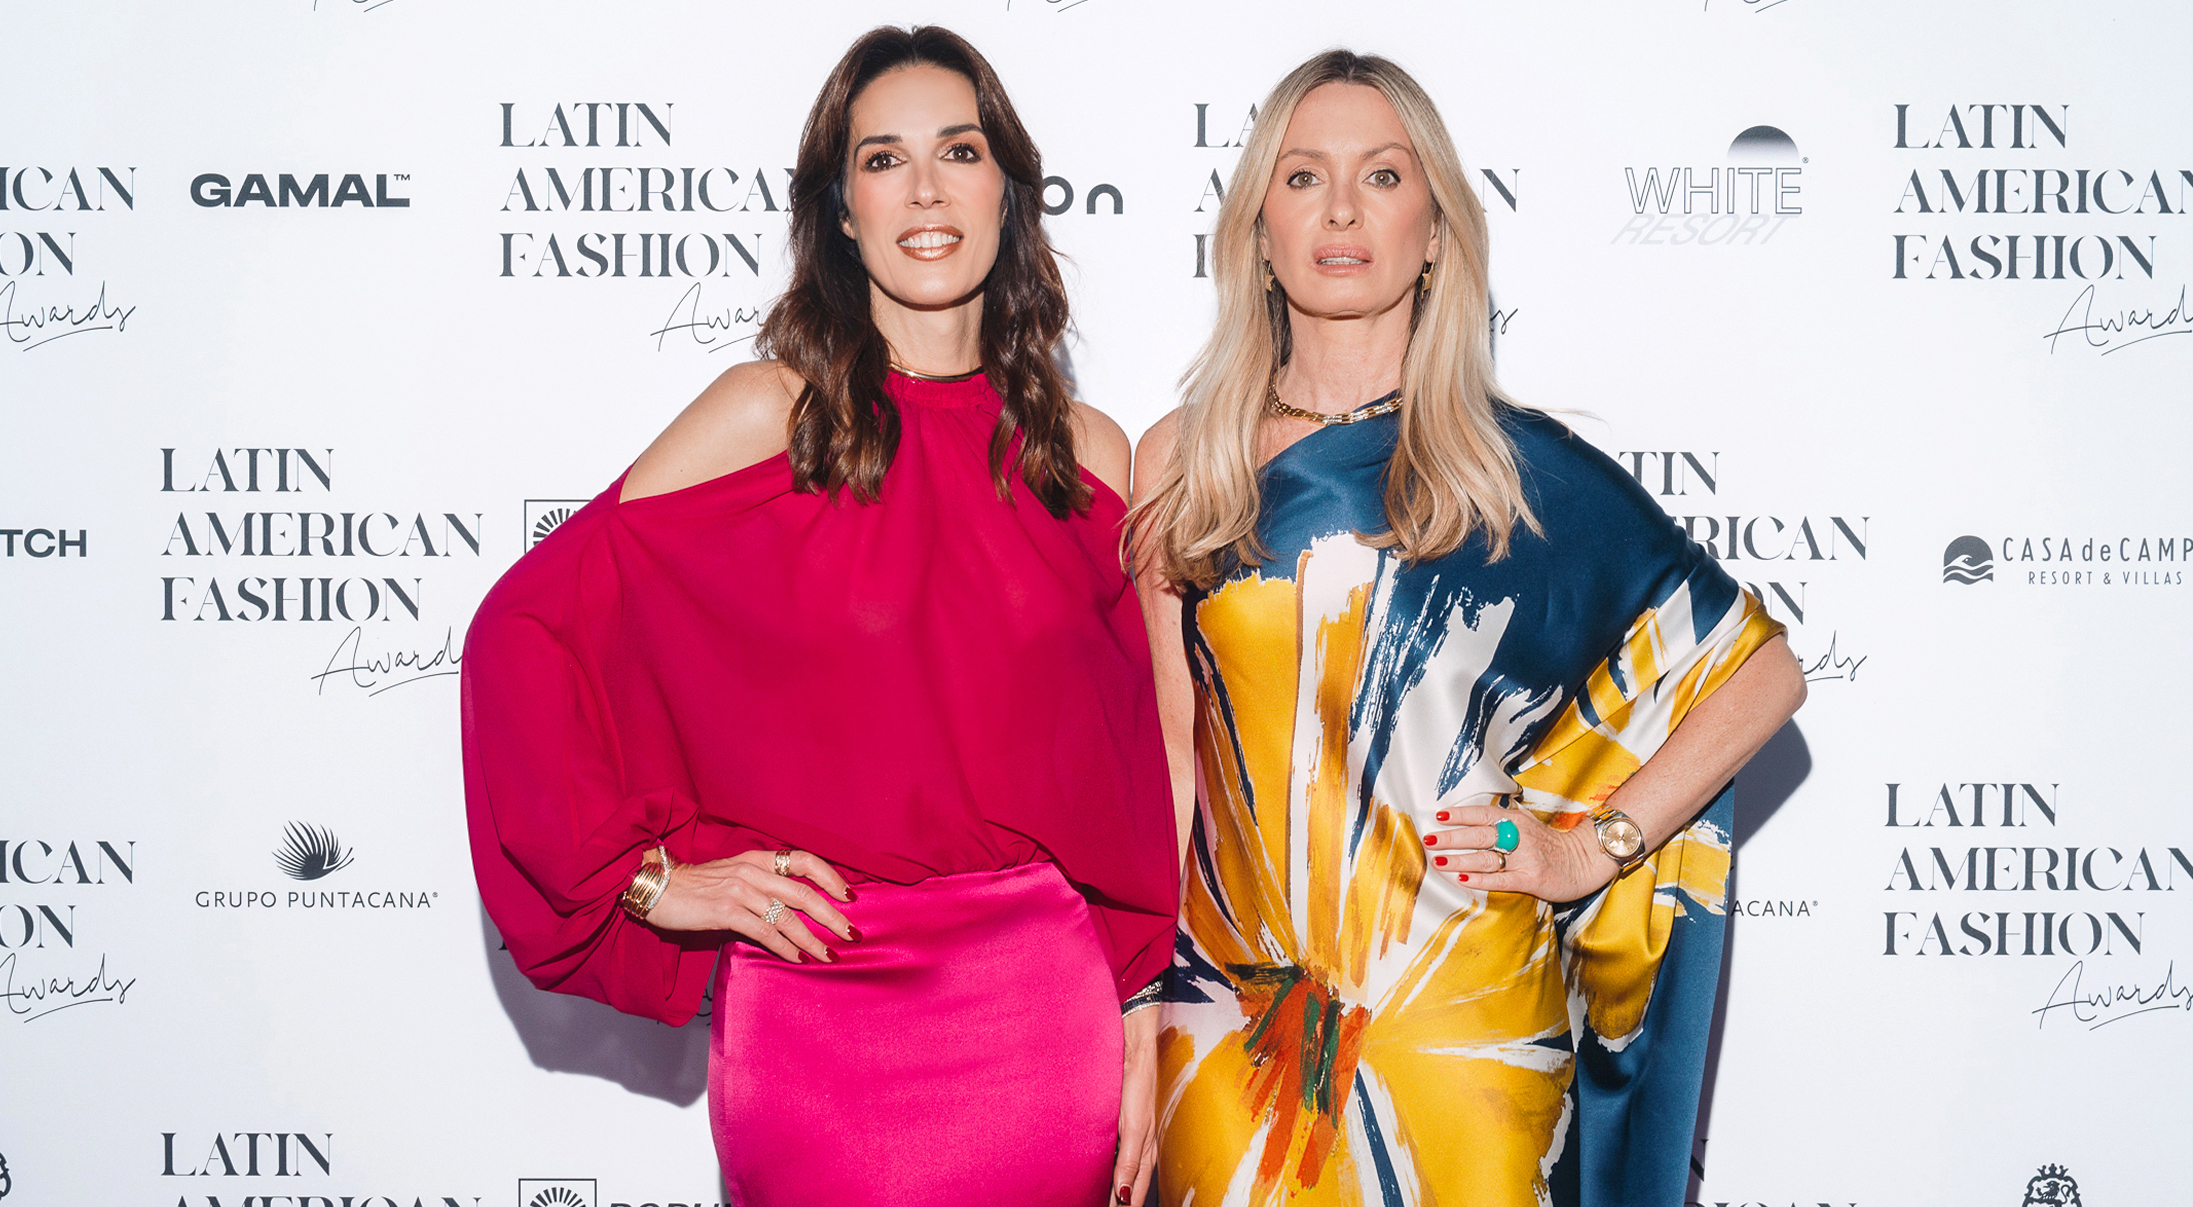 Latin American Fashion Awards Celebra su Lanzamiento Internacional durante la Fashion Week en Milán.